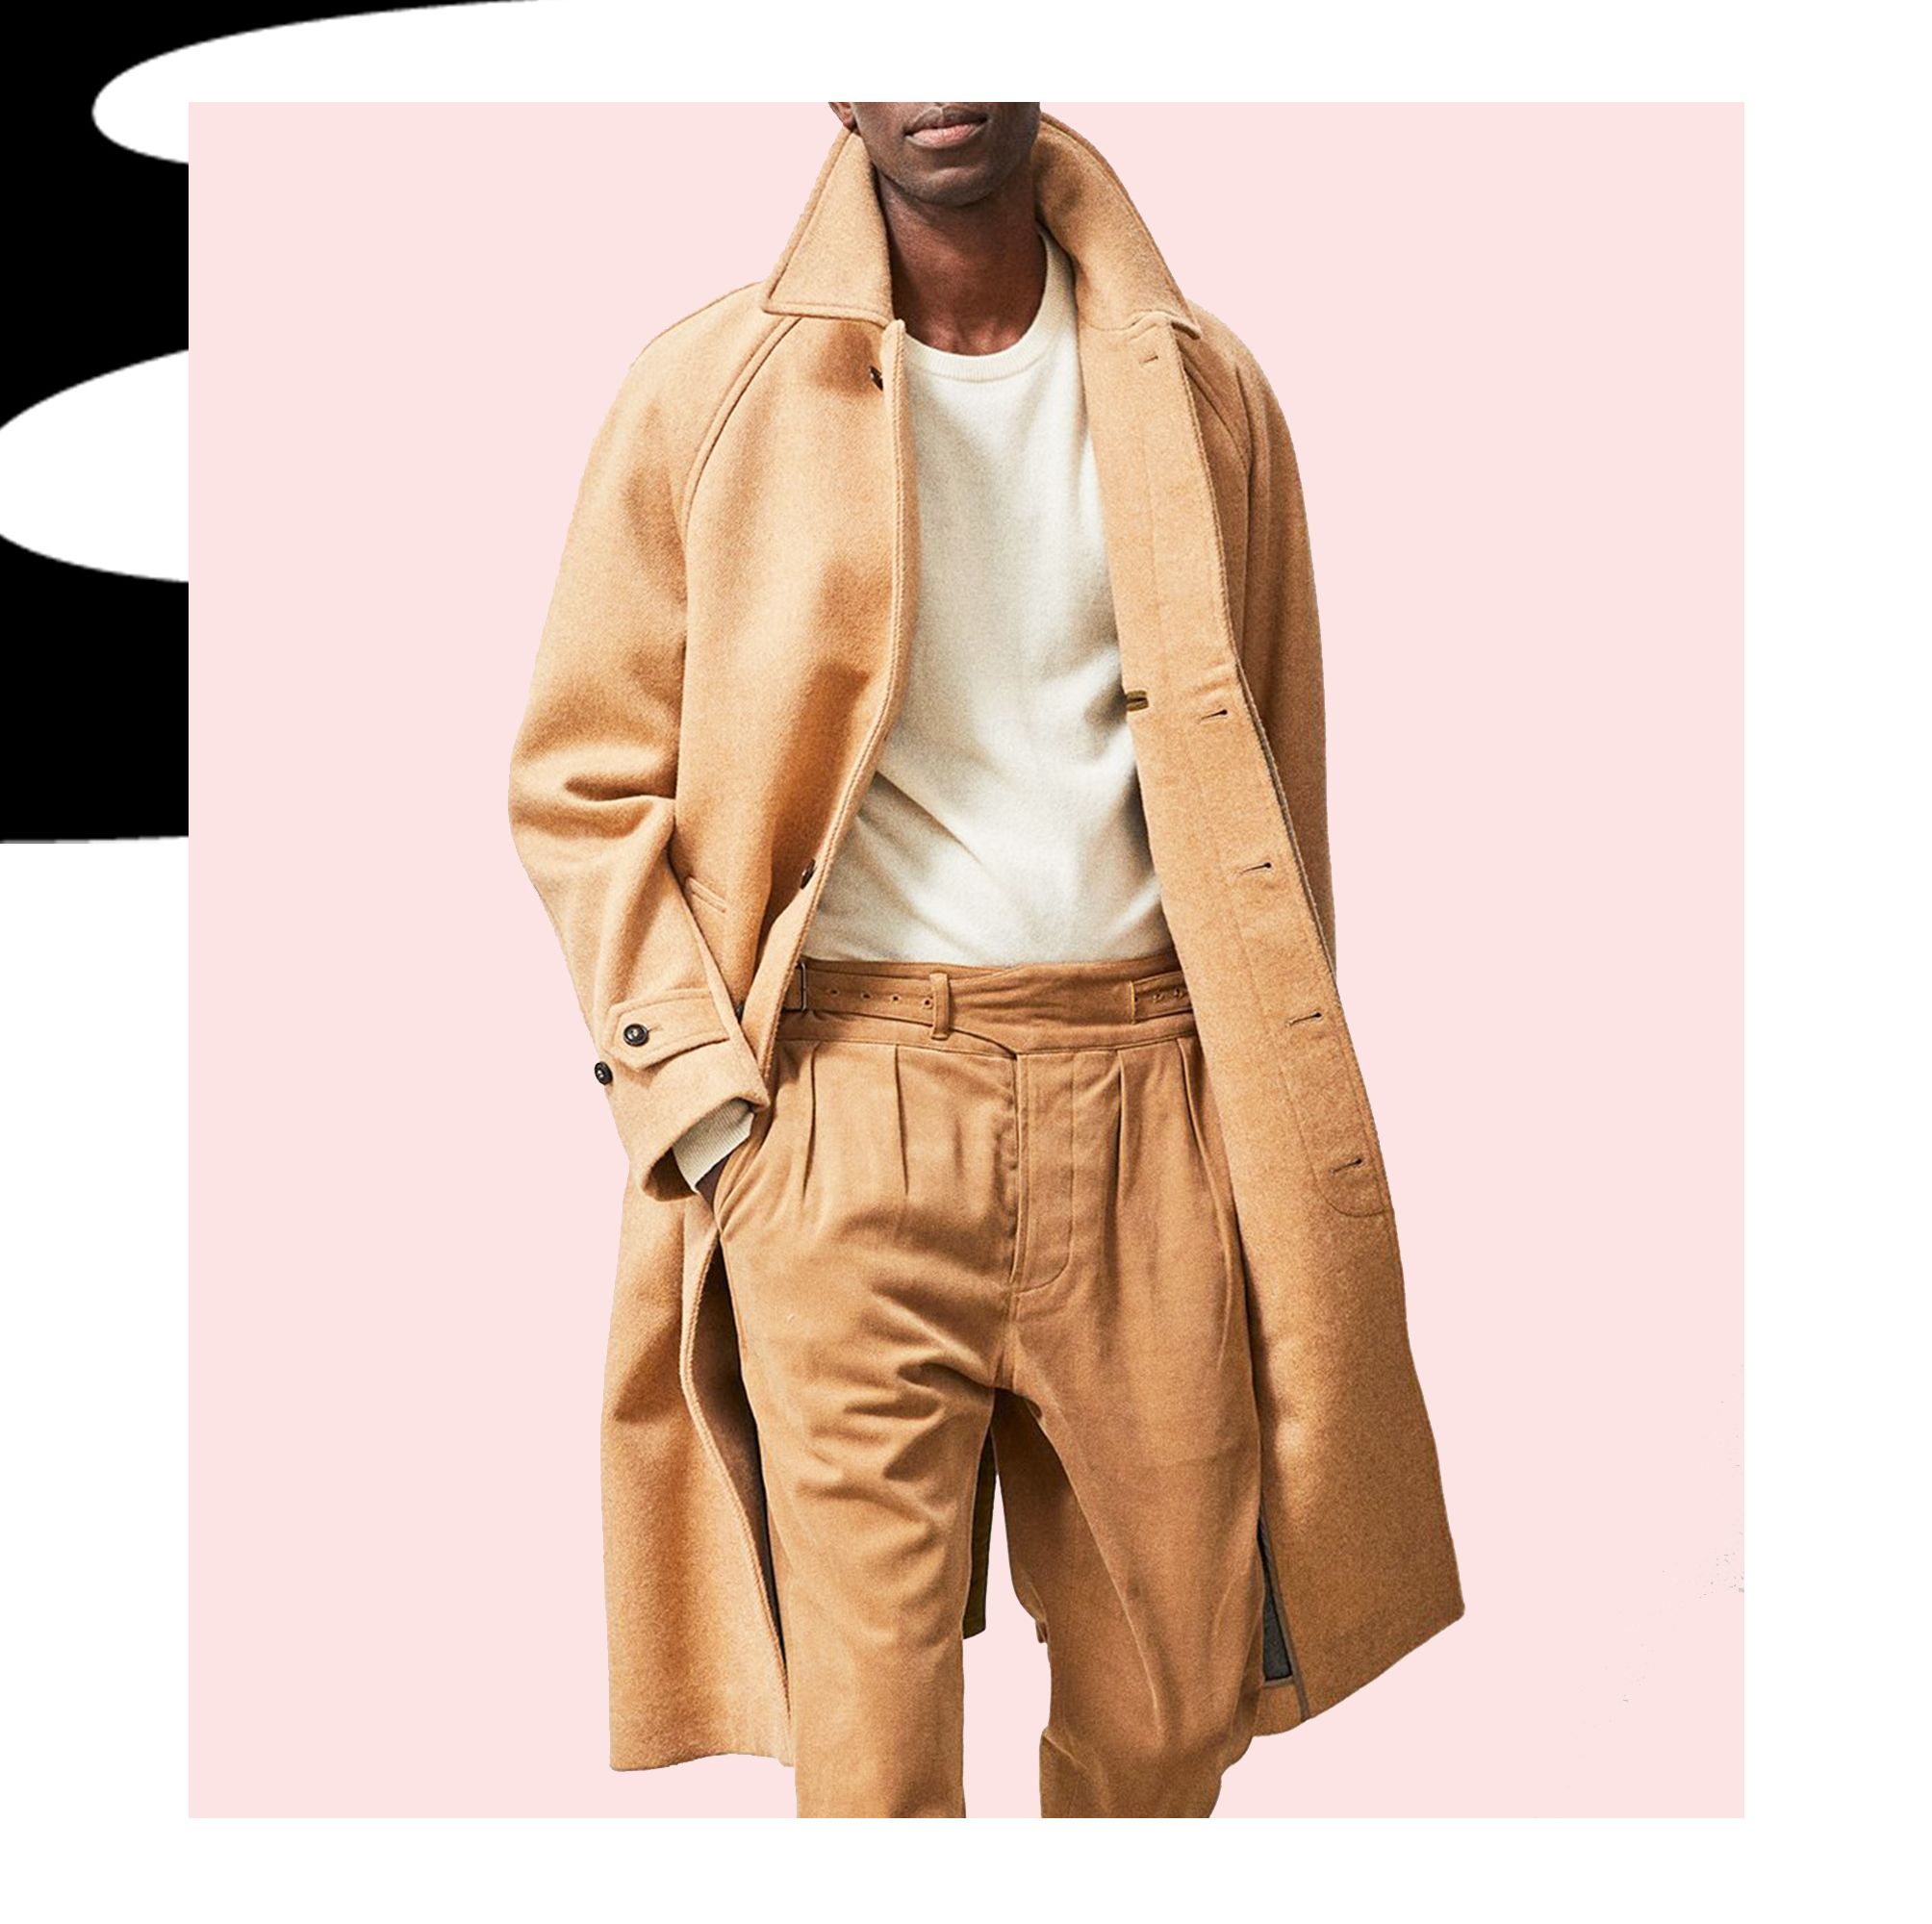 The Camel Coat Is Still Fall's Swankiest Outerwear Style